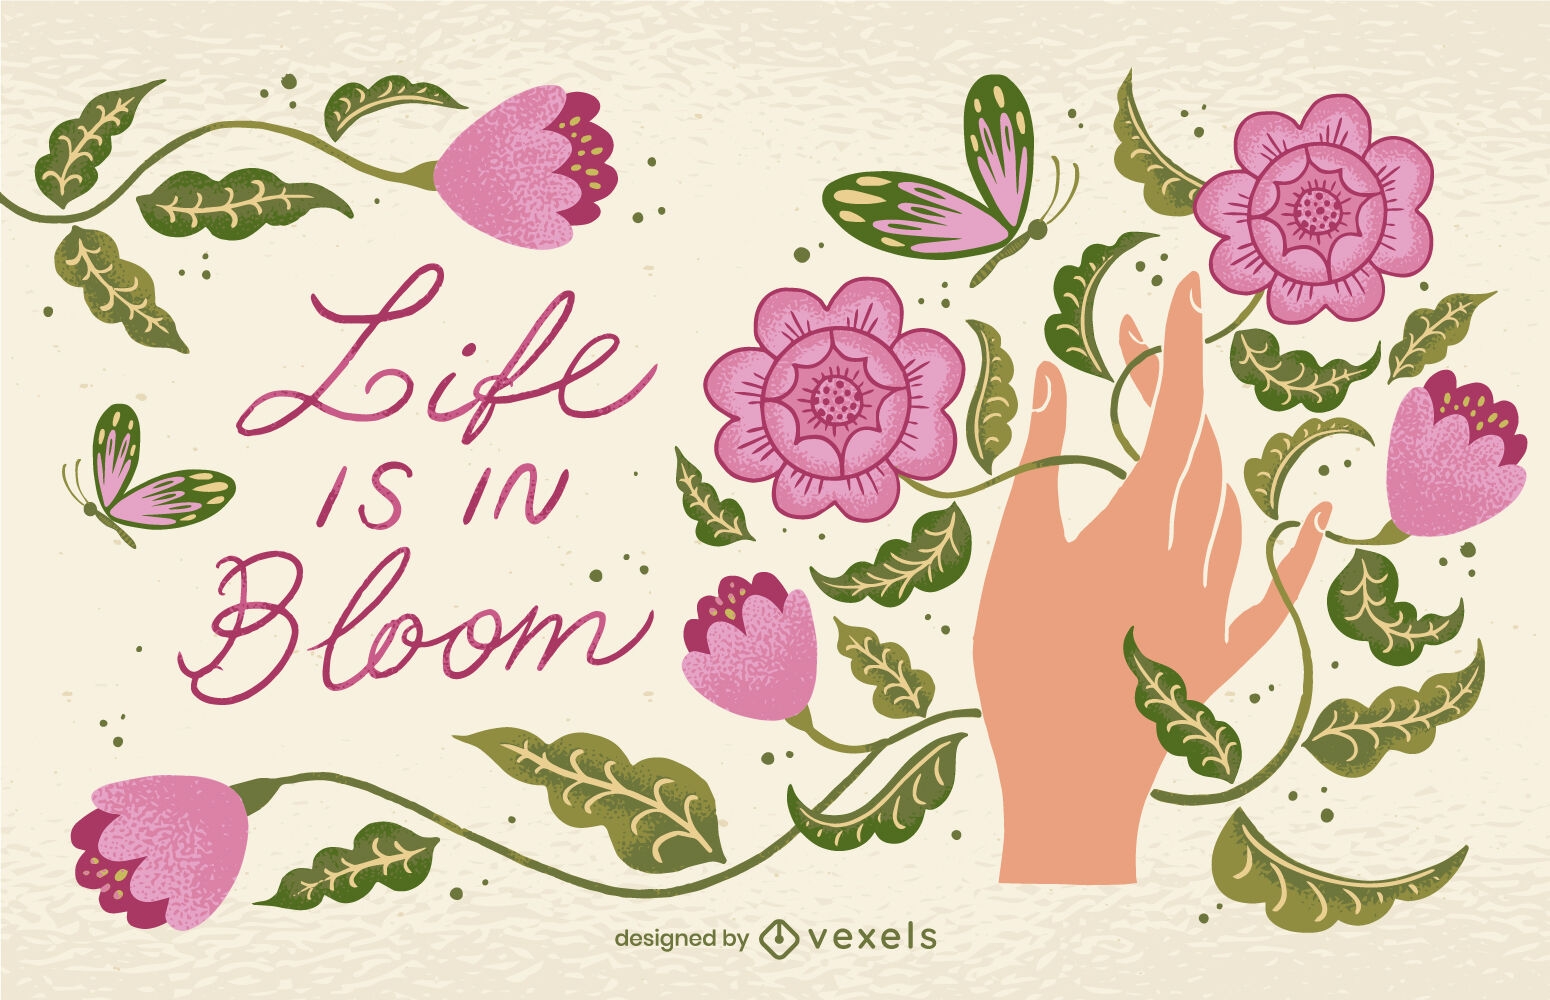 La vida est? en flor, dise?o de ilustraciones.